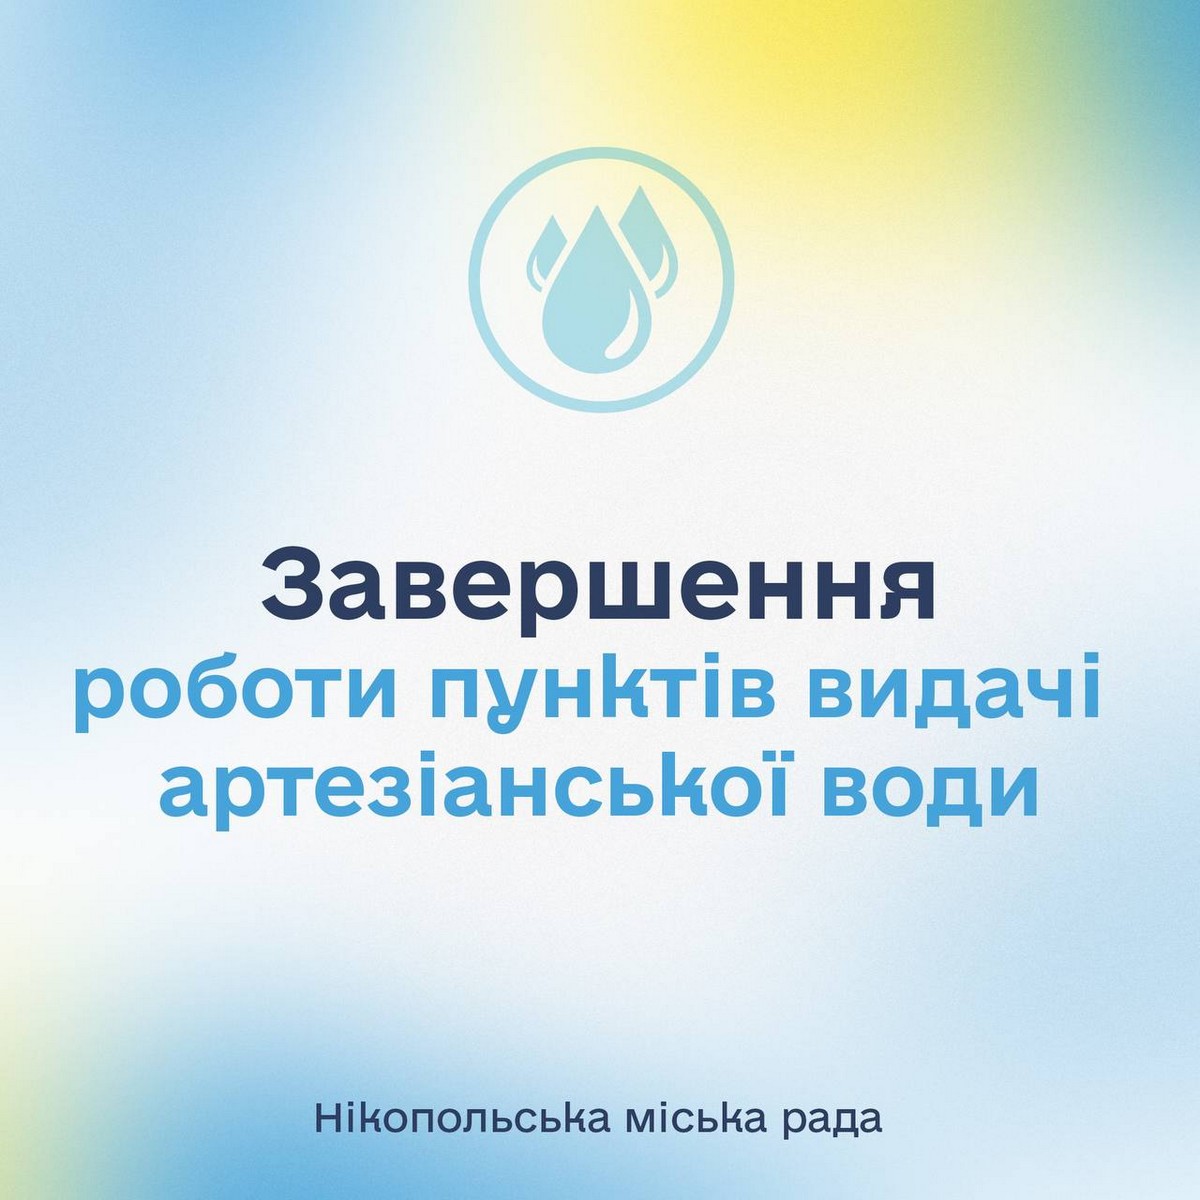 У Нікополі припиняють видачу артезіанської води від ЮНІСЕФ з 1 липня